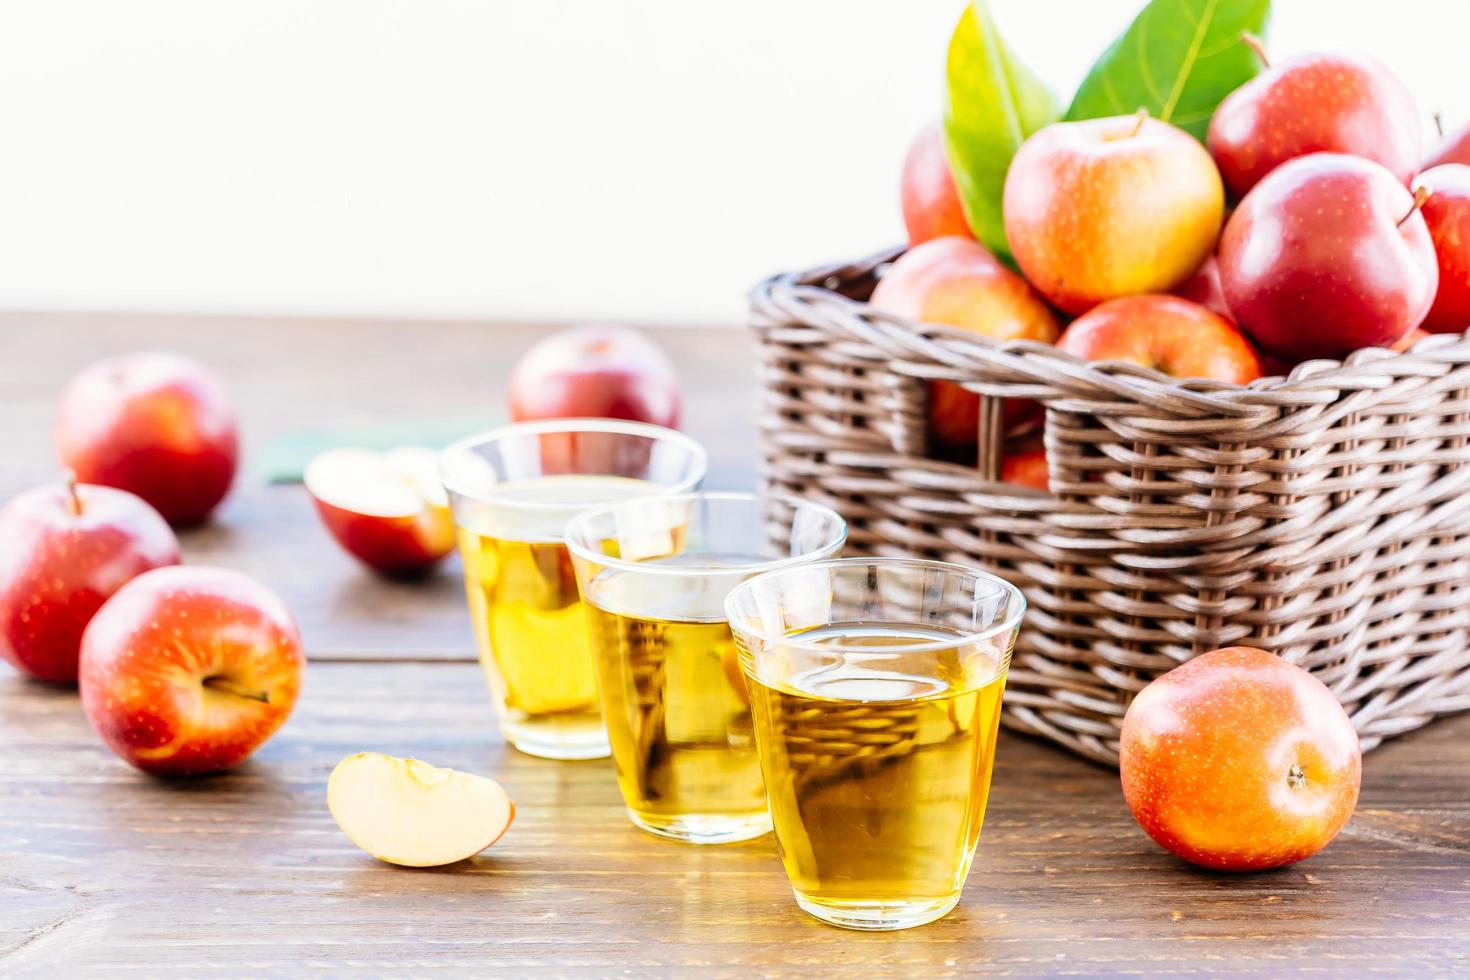 Apfelsaft in Gläsern und Äpfeln im Korb foto